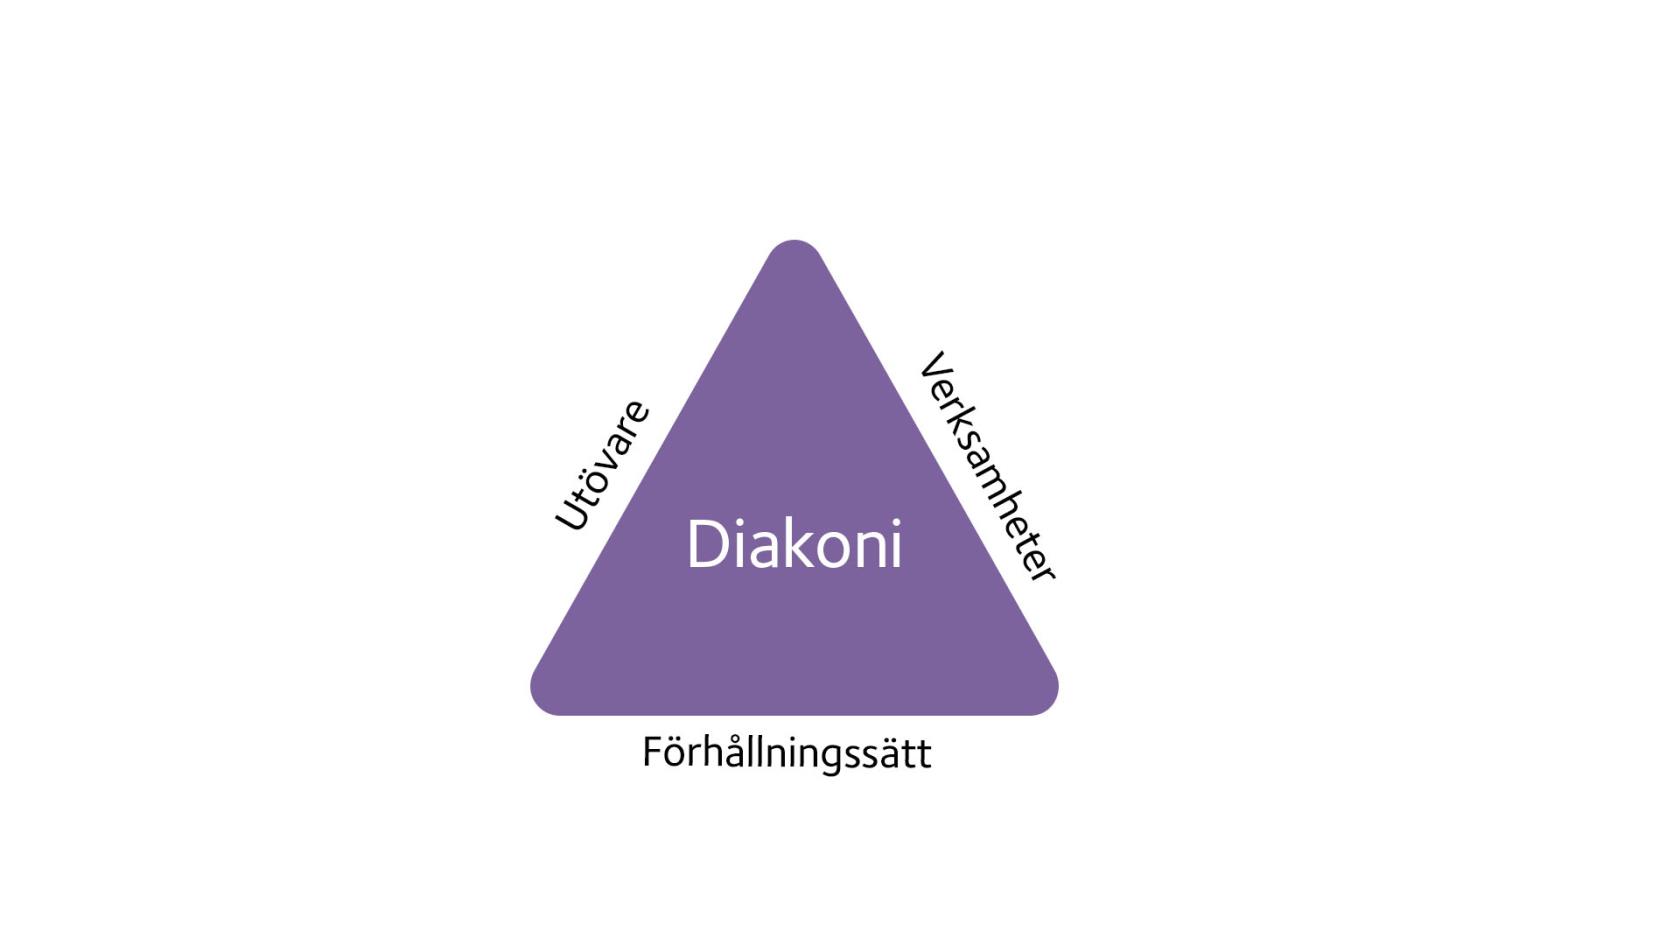 En lila triangel som det står diakoni i. Vid de olika sidorna står de tre orden utövare, verksamheter och förhållningssätt. 